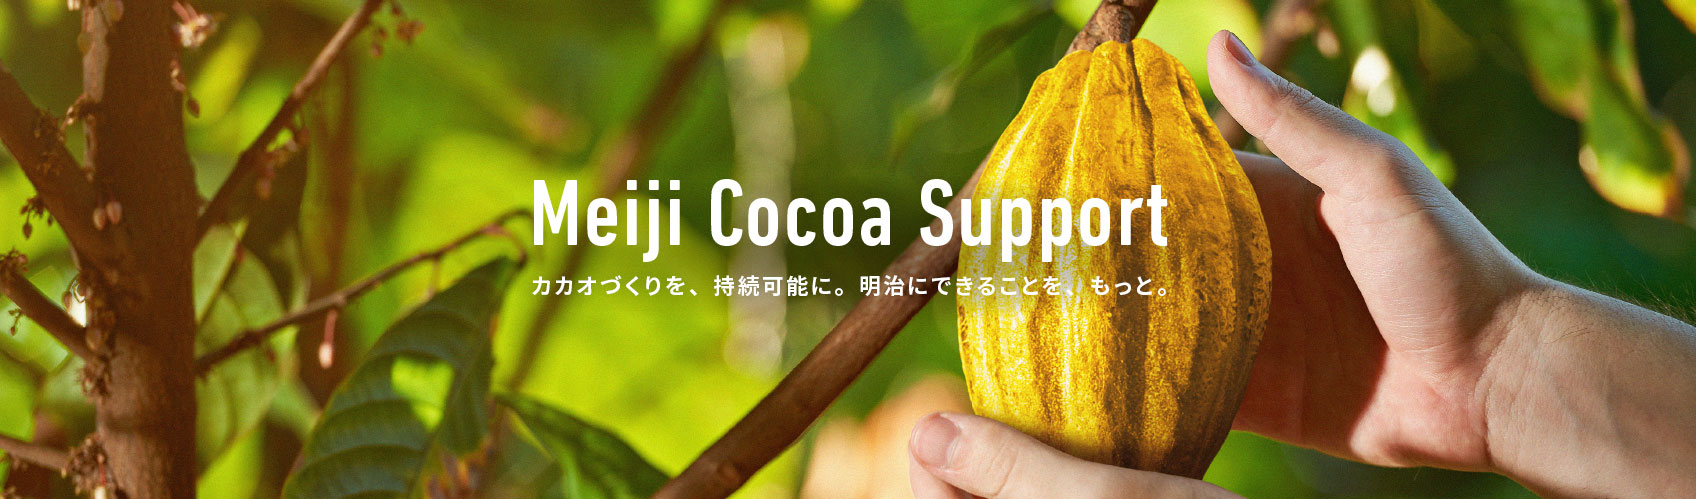 Meiji Cocoa Support カカオづくりを、持続可能に。明治にできることを、もっと。